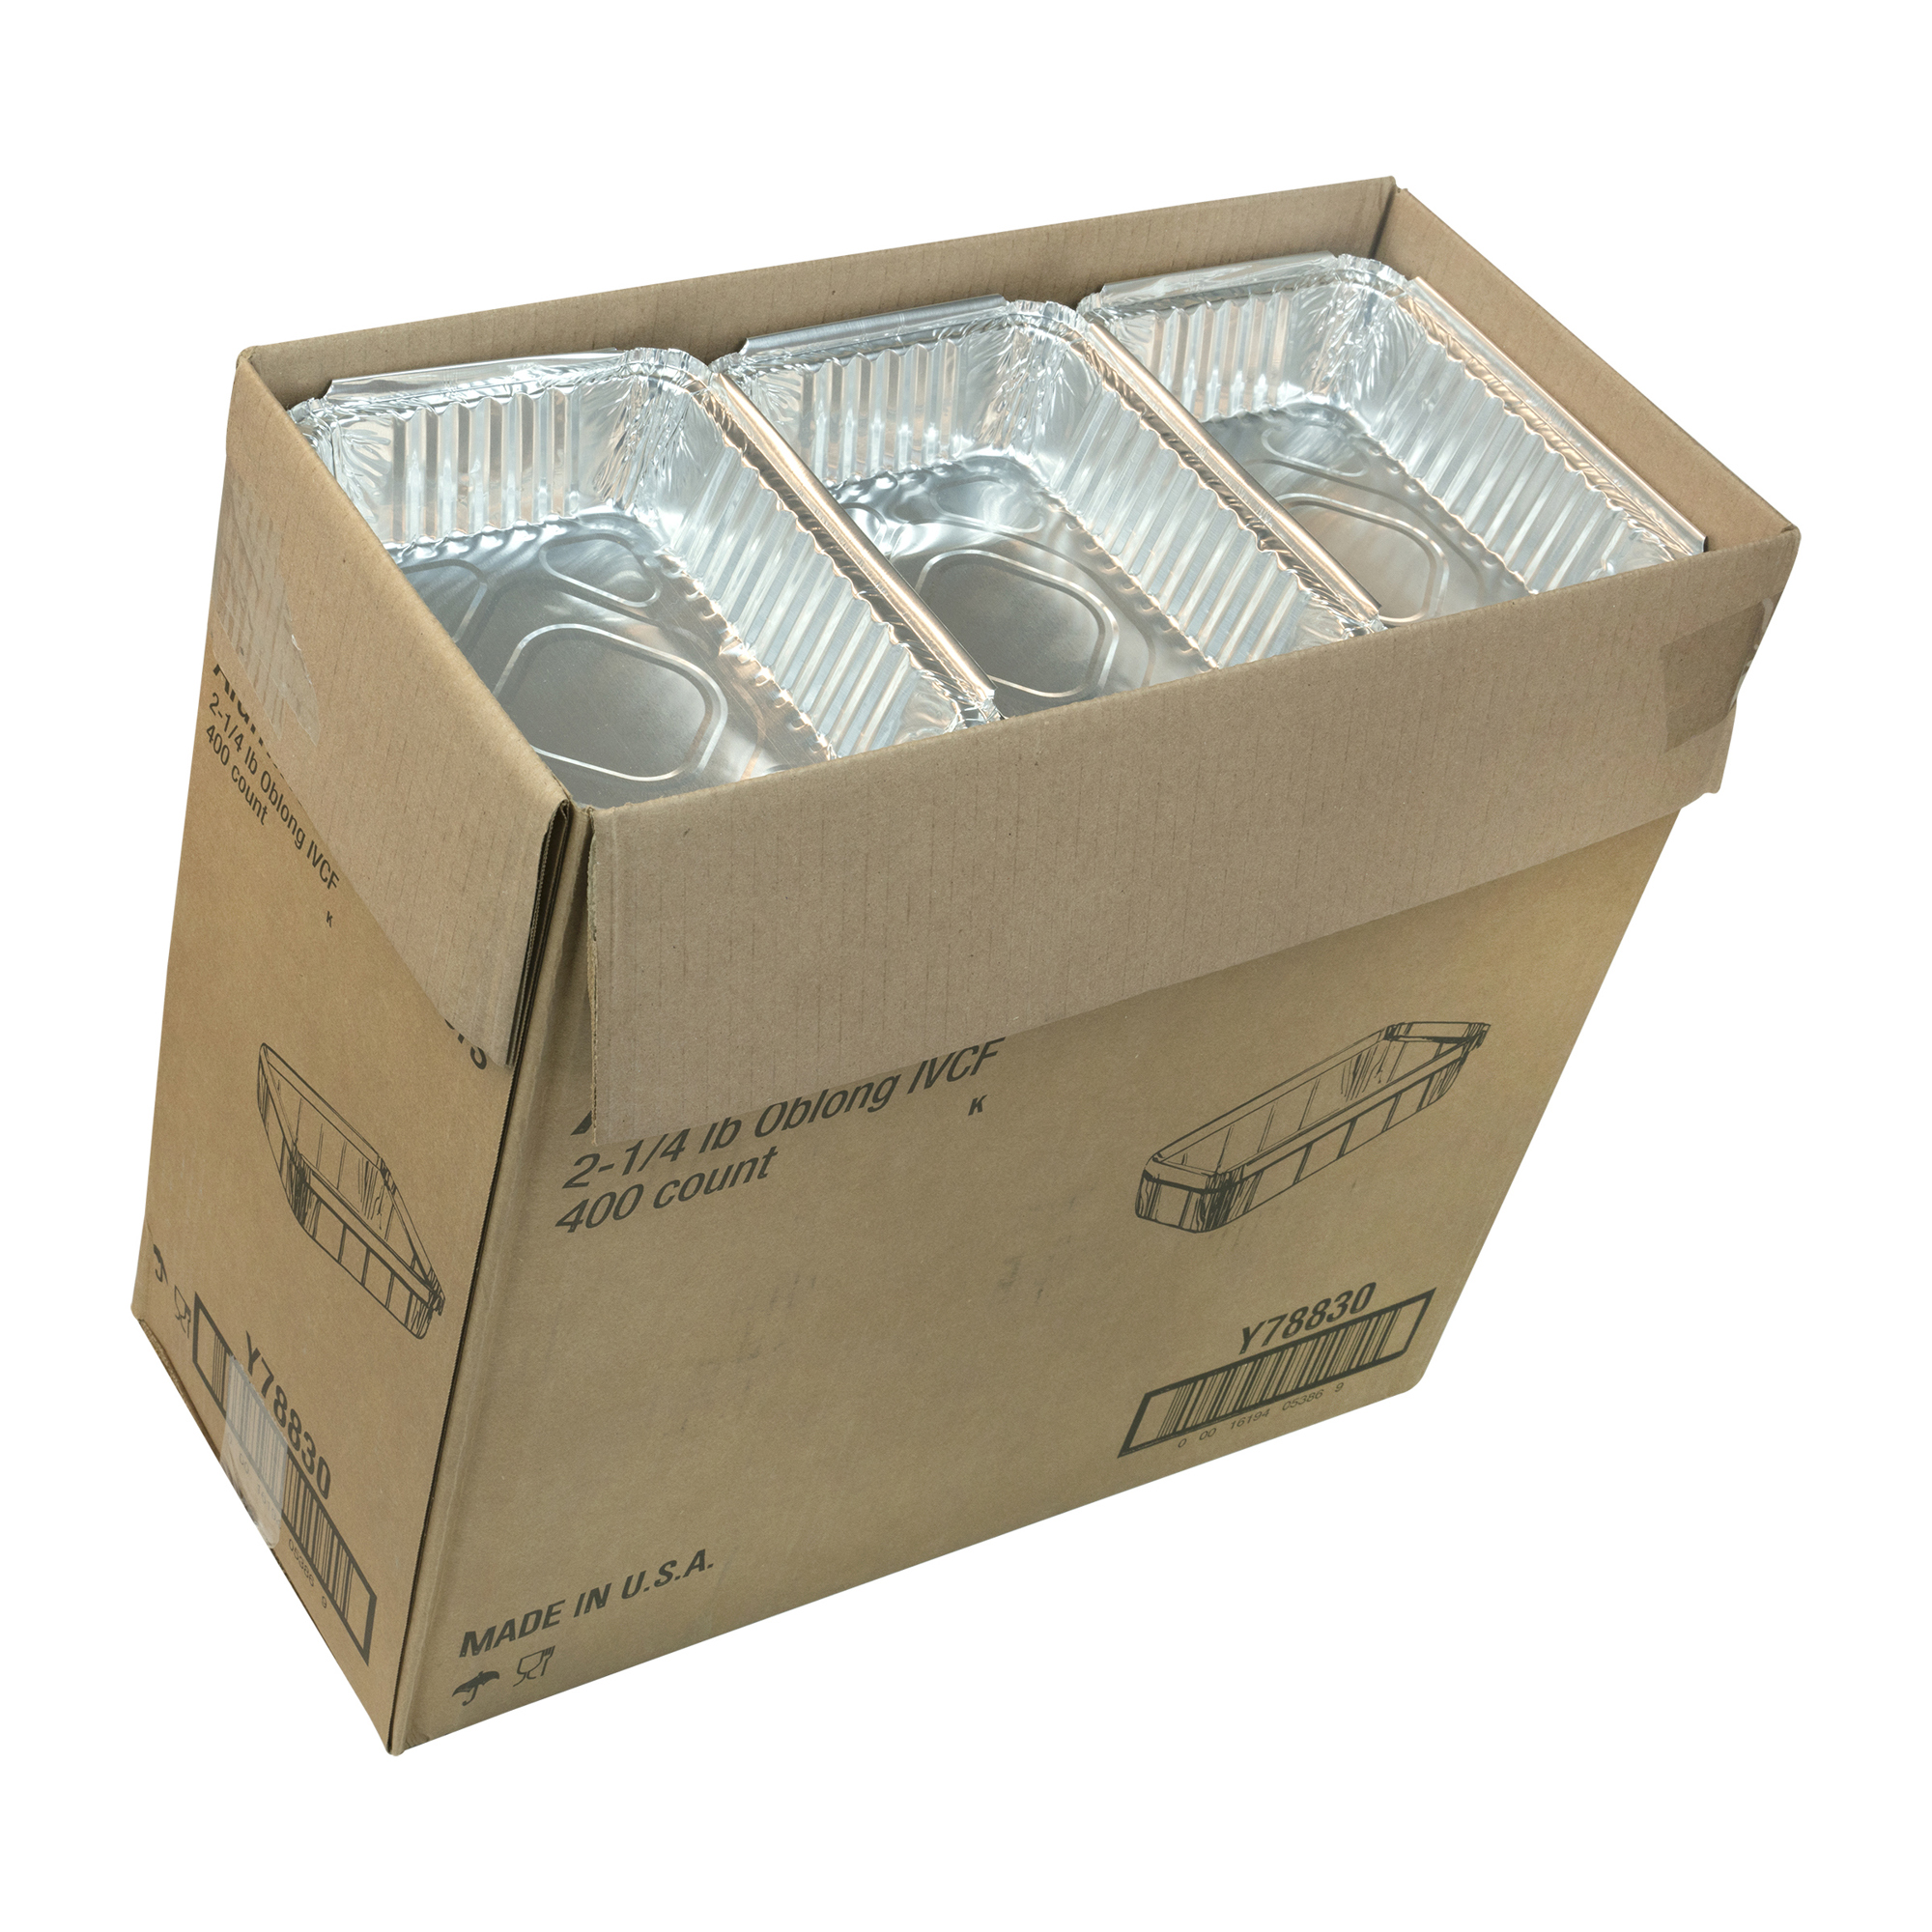 2-1/4 Lb Oblong Foil Containers, Western Plastics 588B